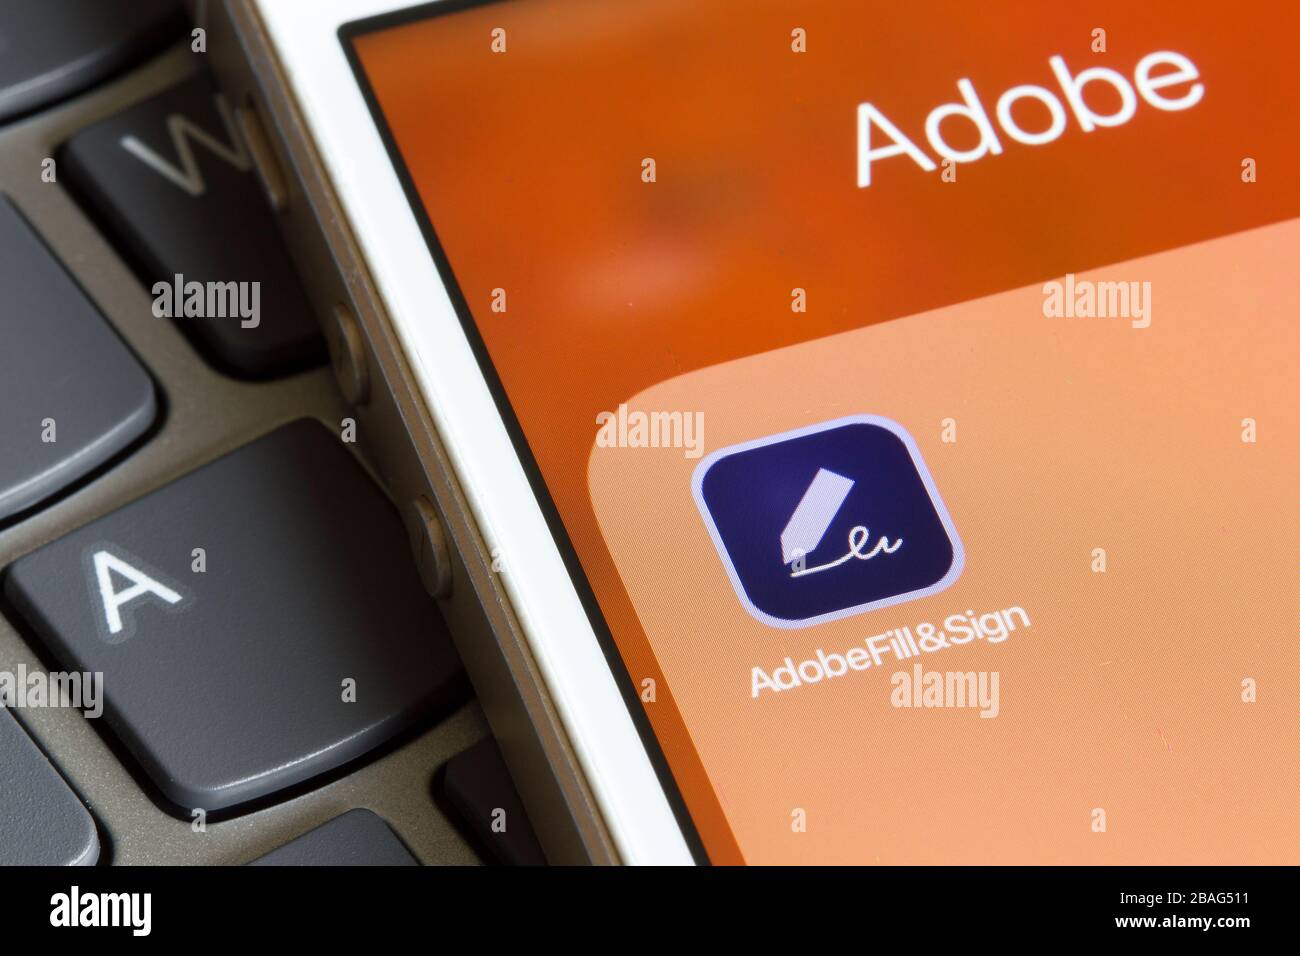 Das Symbol für die mobile App "Adobe Fill and Sign" wird auf einem Smartphone angezeigt. Die Anwendung ermöglicht Benutzern, Formulare von mobilen Geräten aus zu füllen und zu signieren. Stockfoto